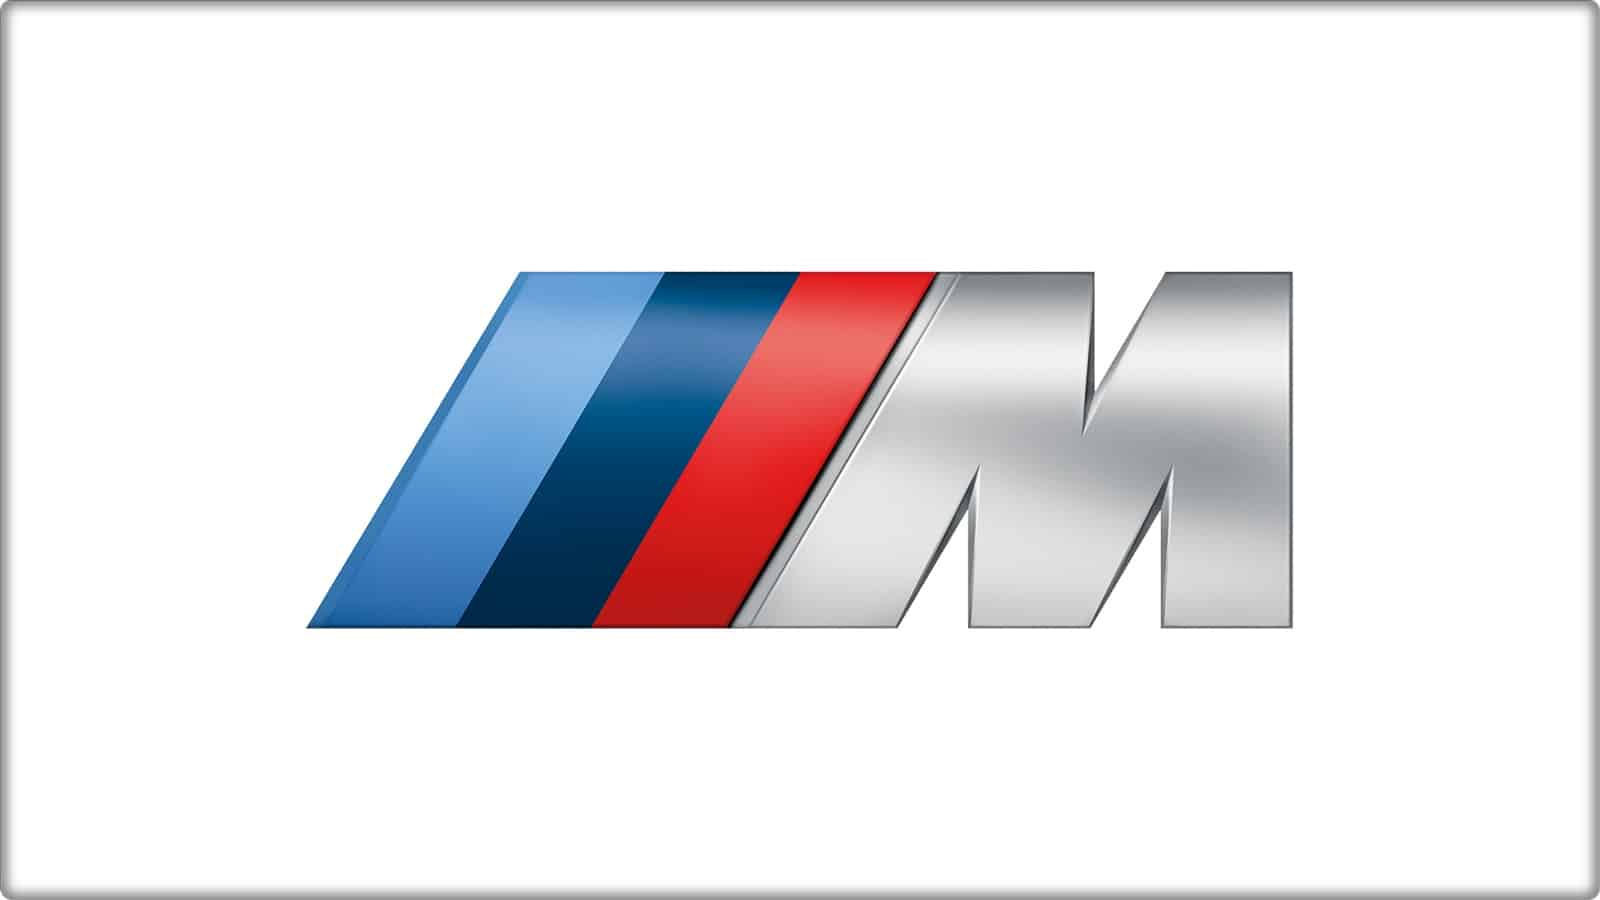 De dónde vienen los colores del logotipo de BMW M? ¿Qué representan?